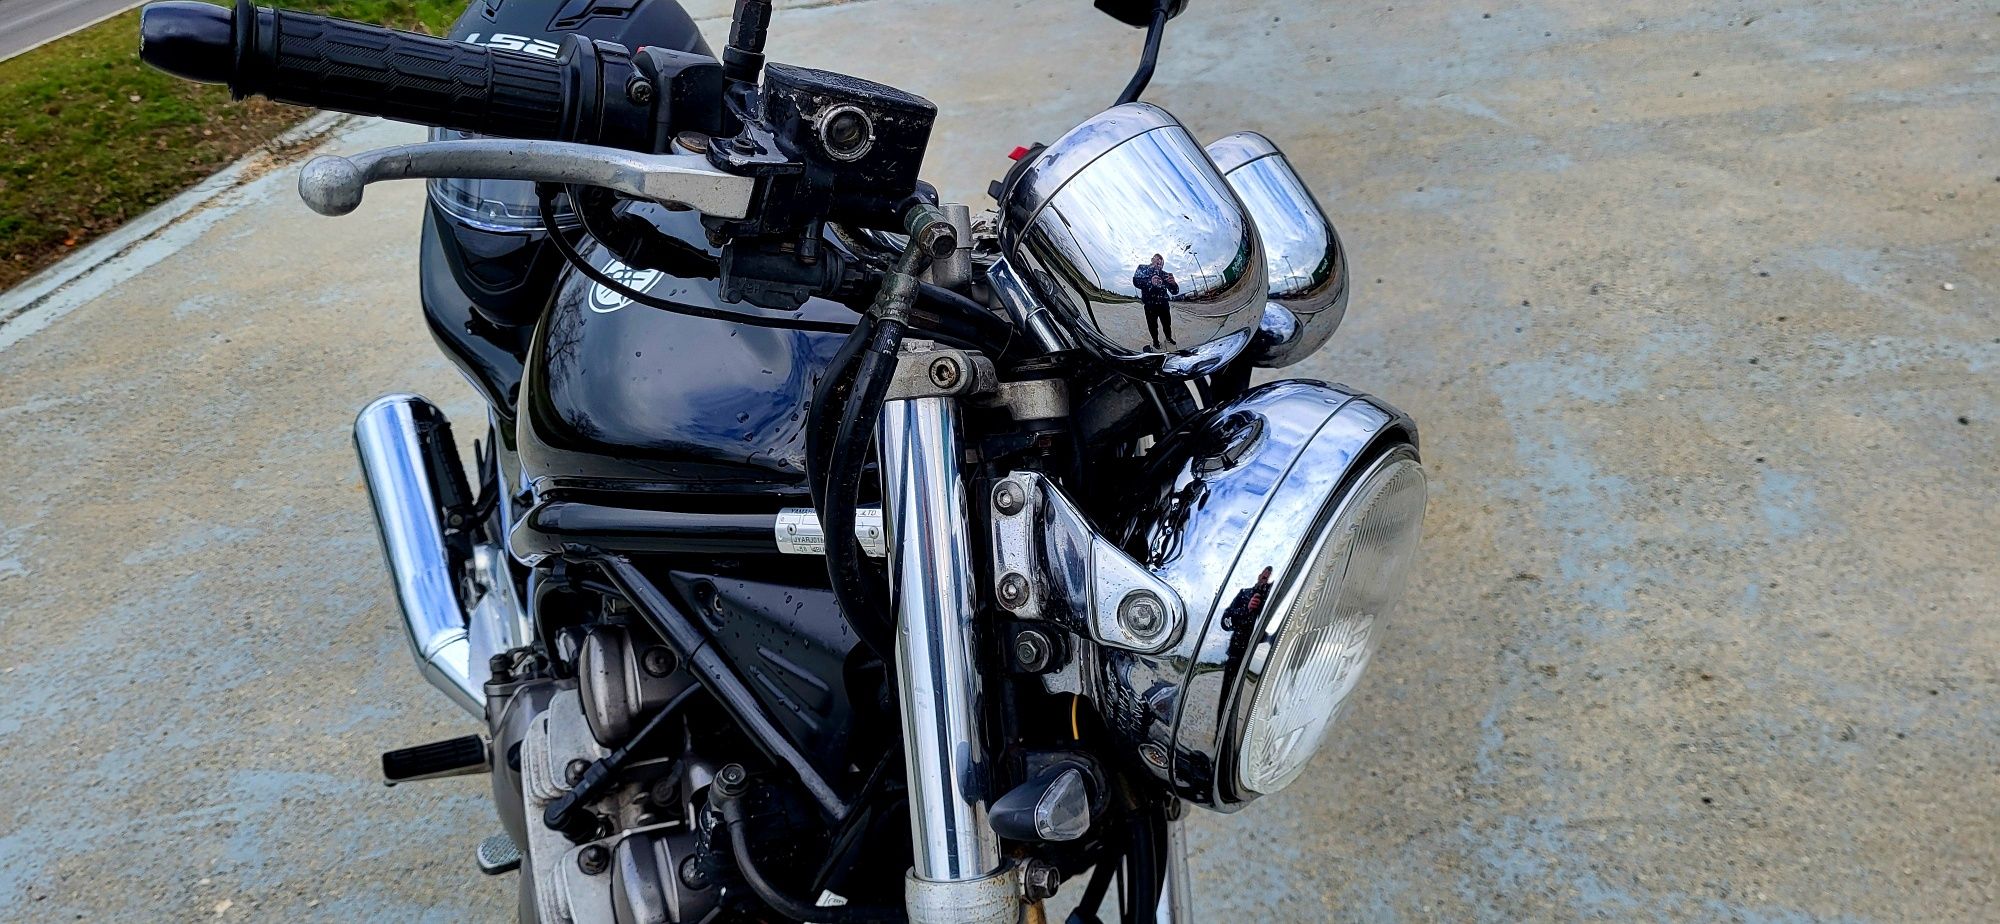 Motocykl Yamaha xj 600 S naked 2001r.